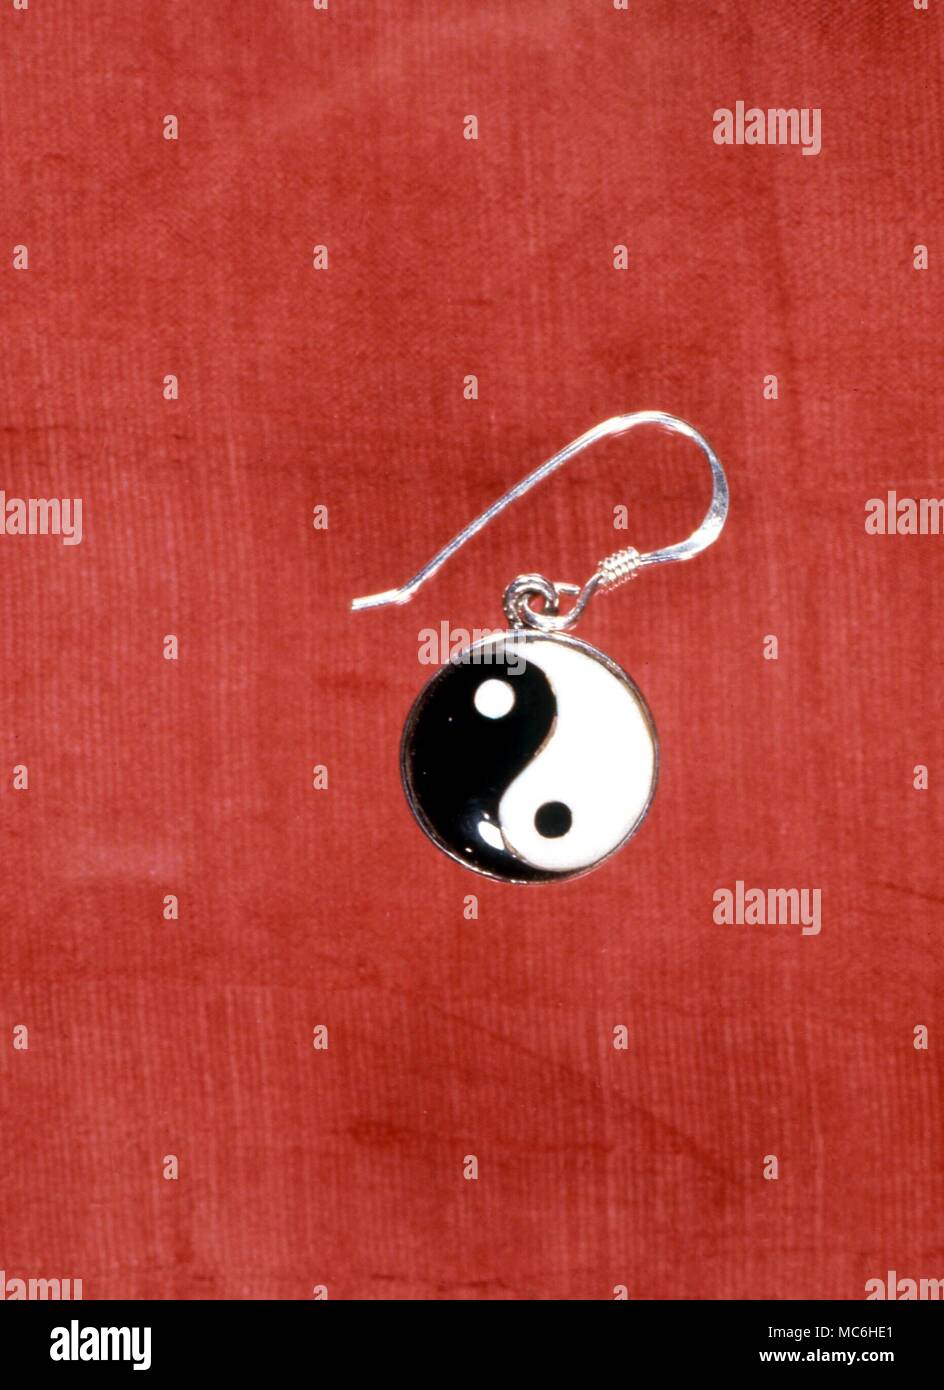 Amulette - Amuelt Ohrring in der Form der chinesischen Tai Chi mit dem Wechsel von Yin und Yang Kräfte (Licht und Dunkelheit), die jeweils über ein Staubkorn sein Gegenteil enthalten in der Mitte der Schüssel Stockfoto